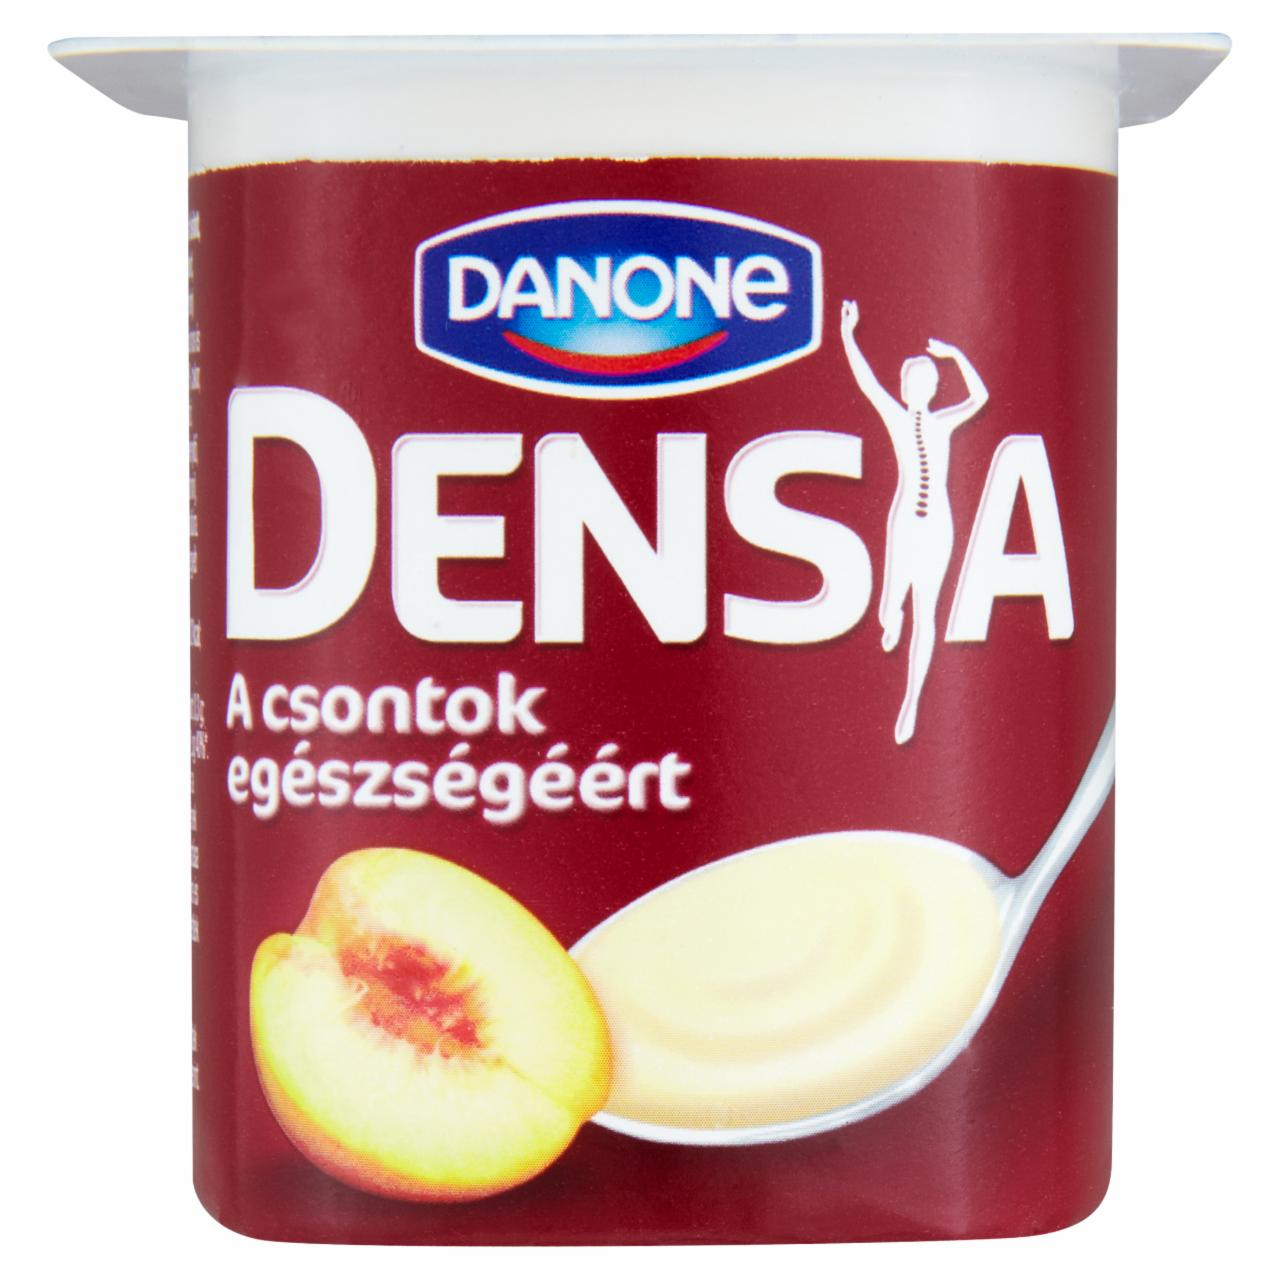 Képek - Danone Densia kalciummal és D-vitaminnal dúsított, élőflórás, zsírszegény őszibarackos joghurt 125 g